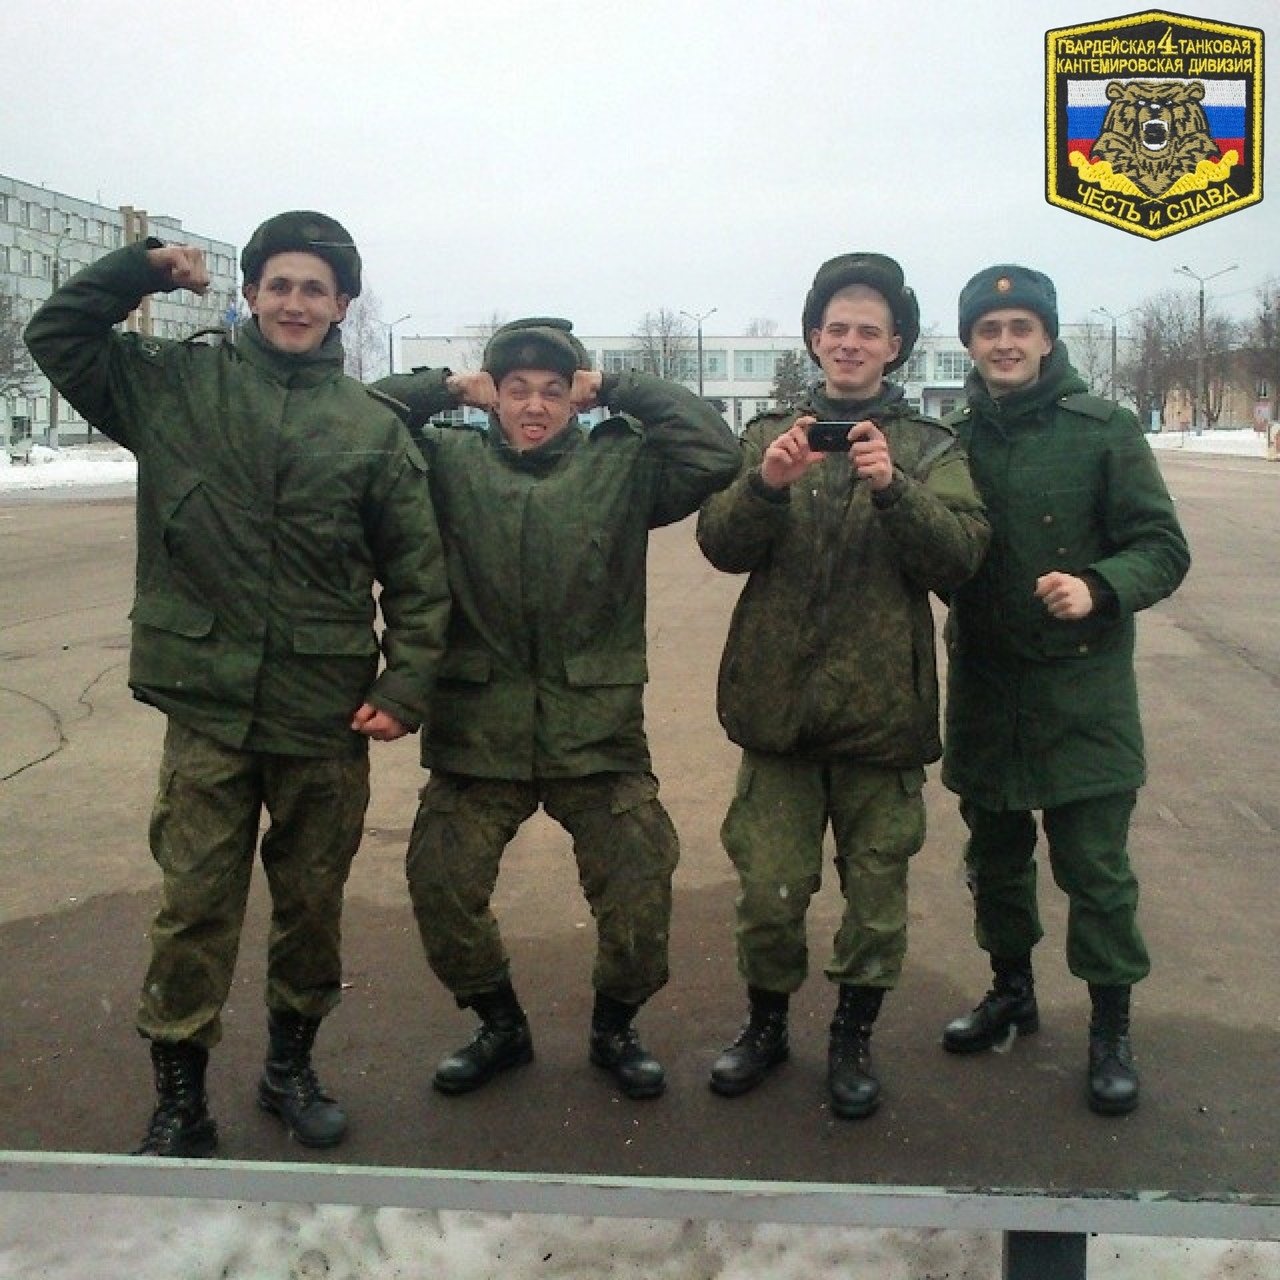 ямпольский полк кантемировской дивизии на украине потери